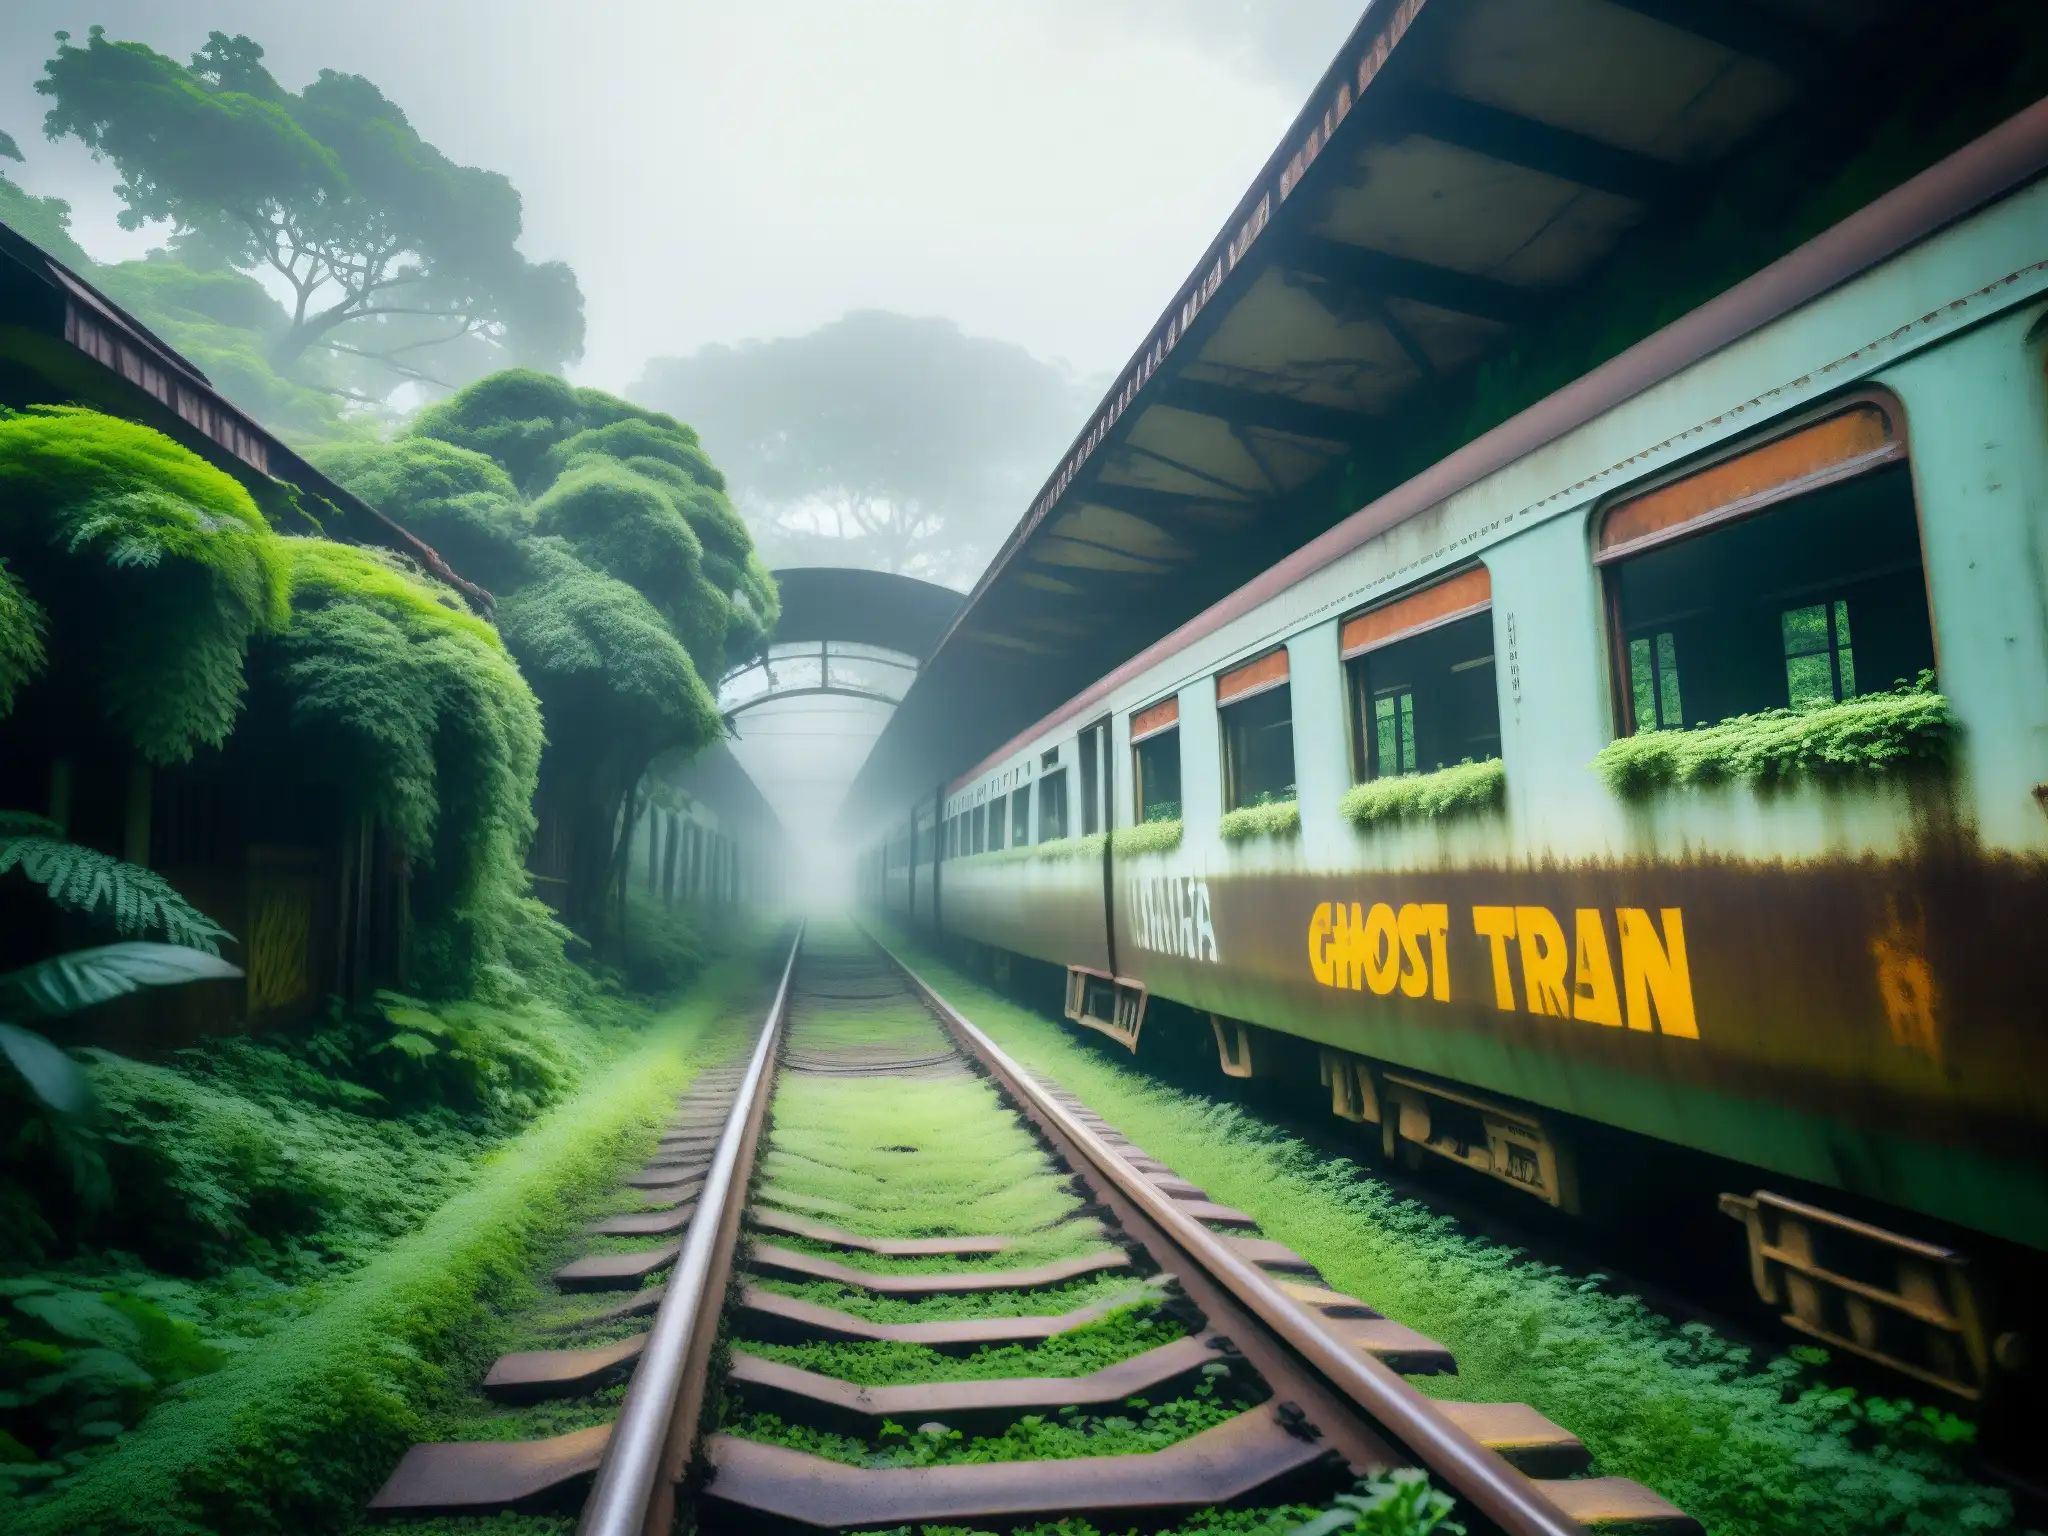 Un tren fantasma abandonado en el bosque de Bishan, con vías oxidadas desapareciendo entre la niebla, rodeado de vegetación